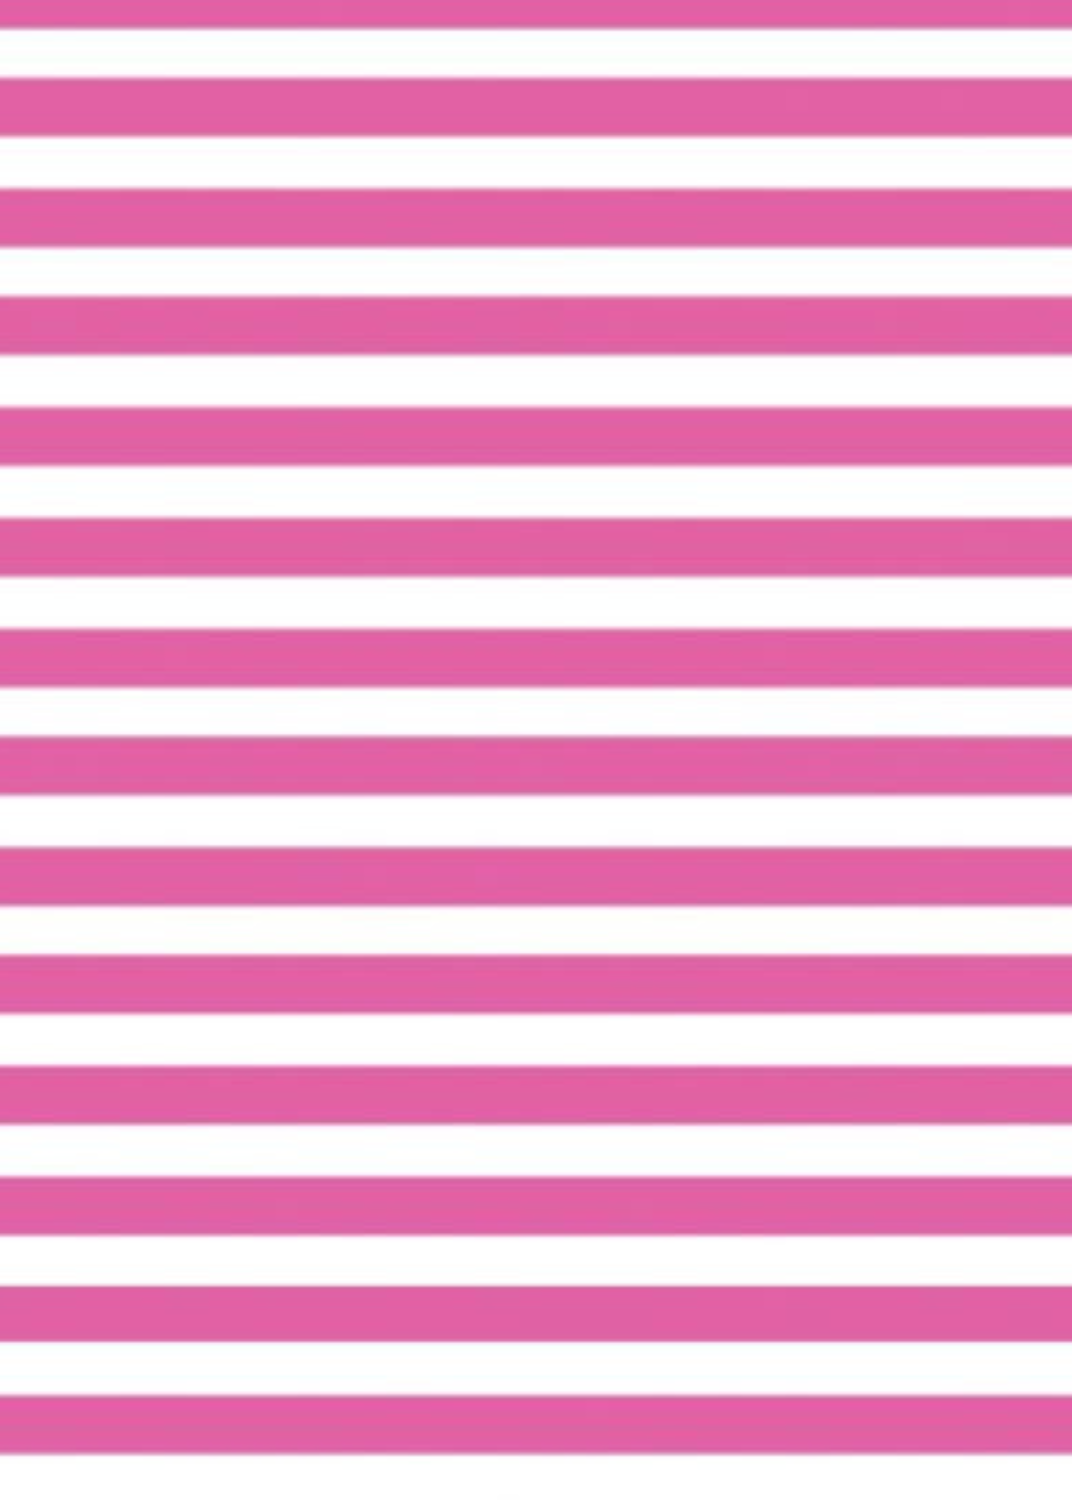 Seaport Shift - Stripe Hot Pink/White